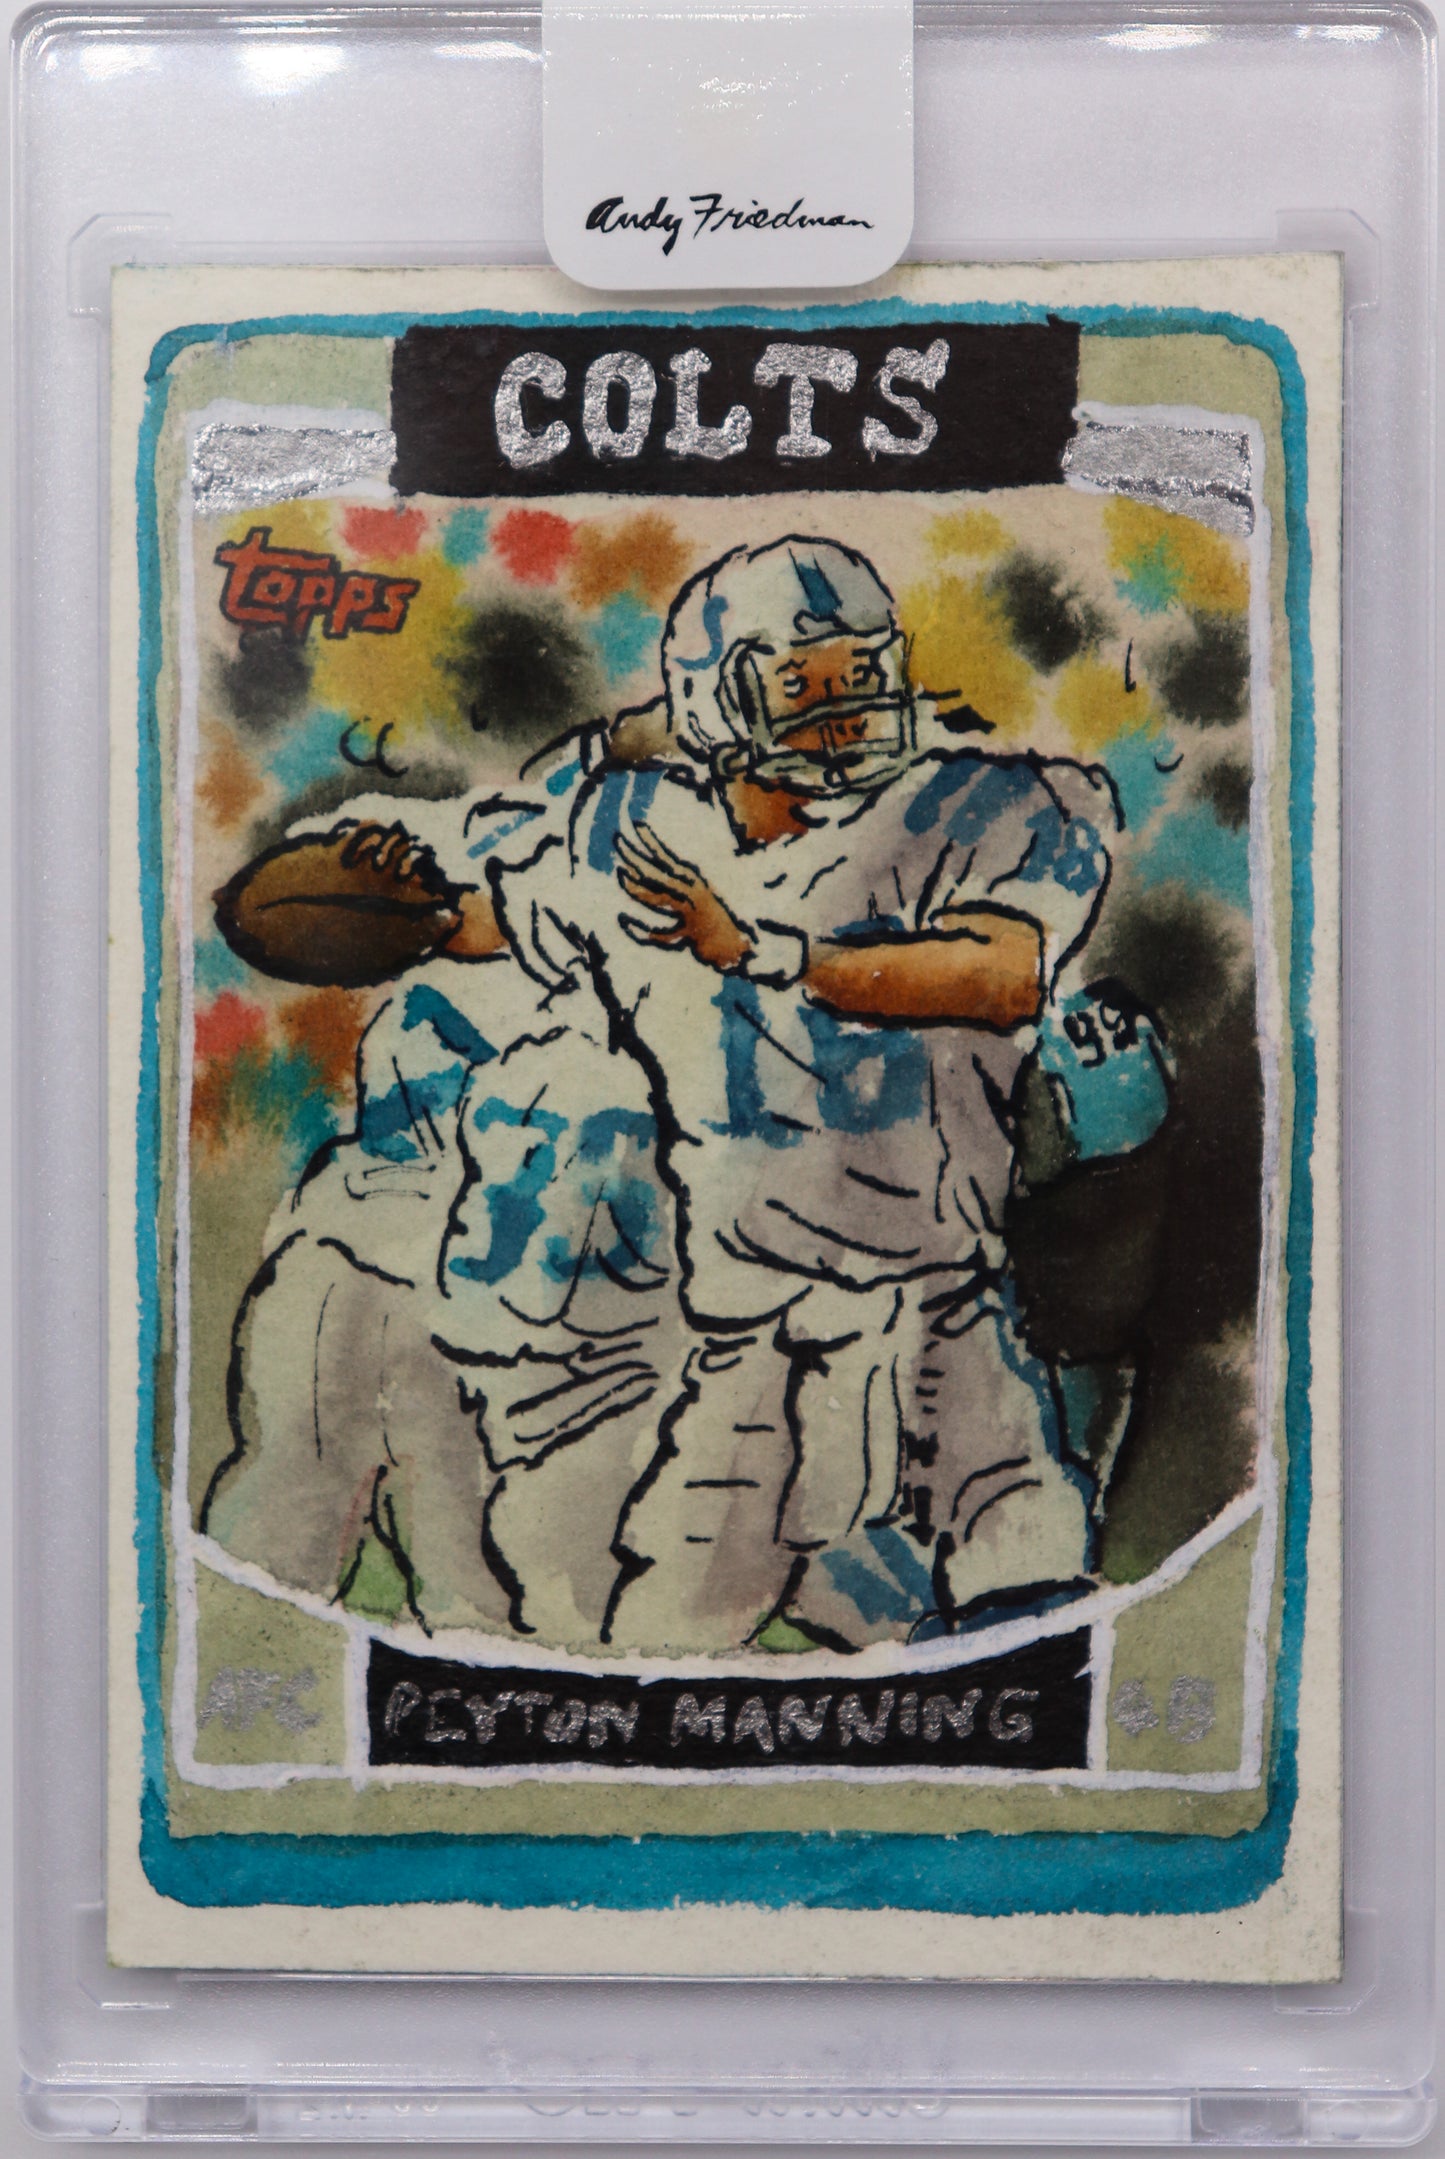 2022 Topps Peyton Manning 1/1, Andy Friedman Art Card